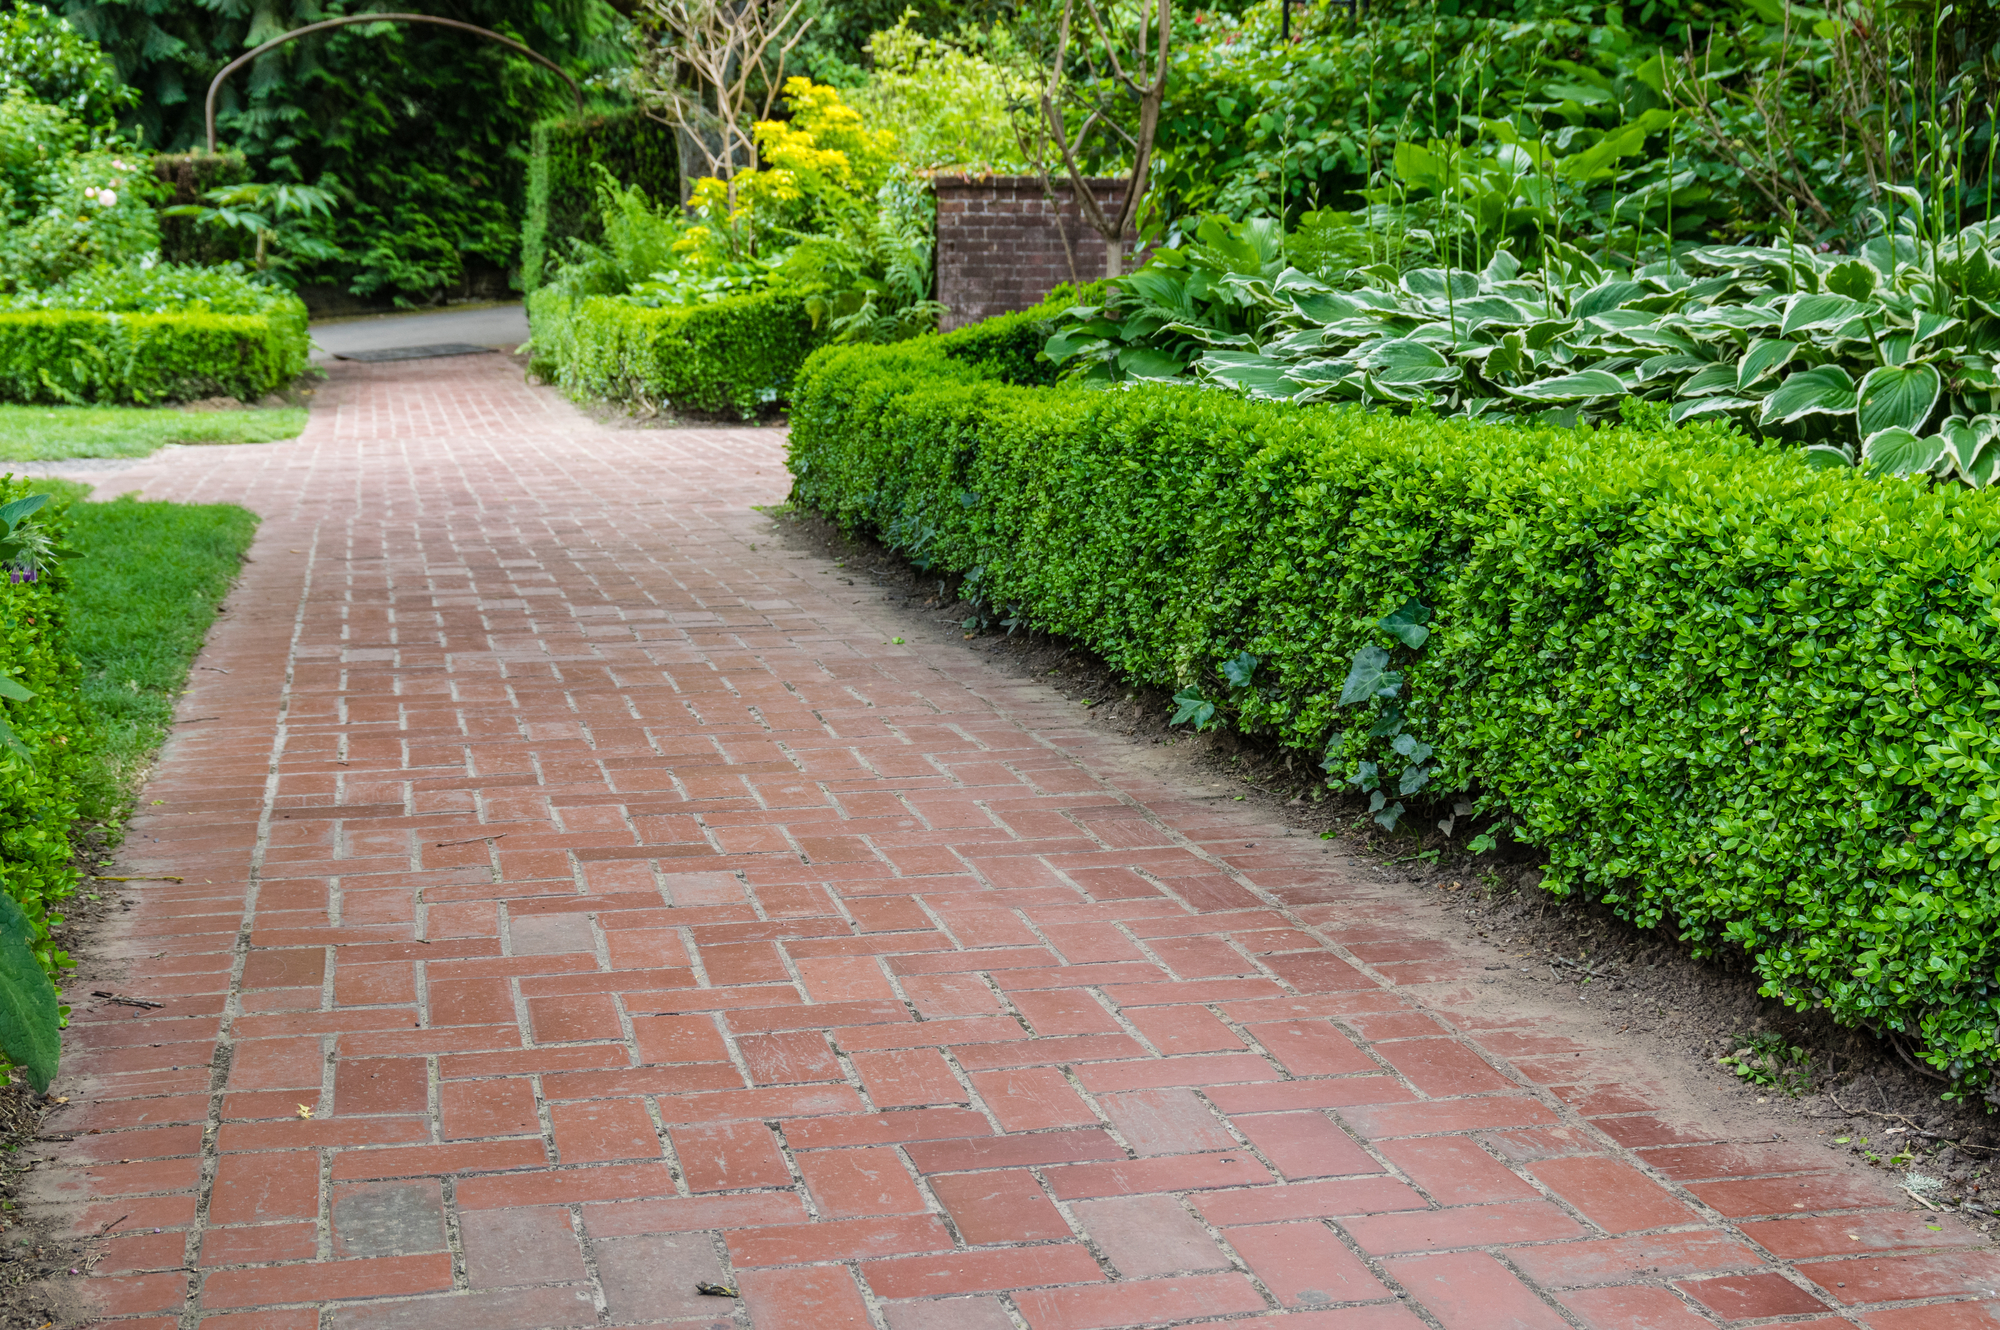 Brick pathways through a garden